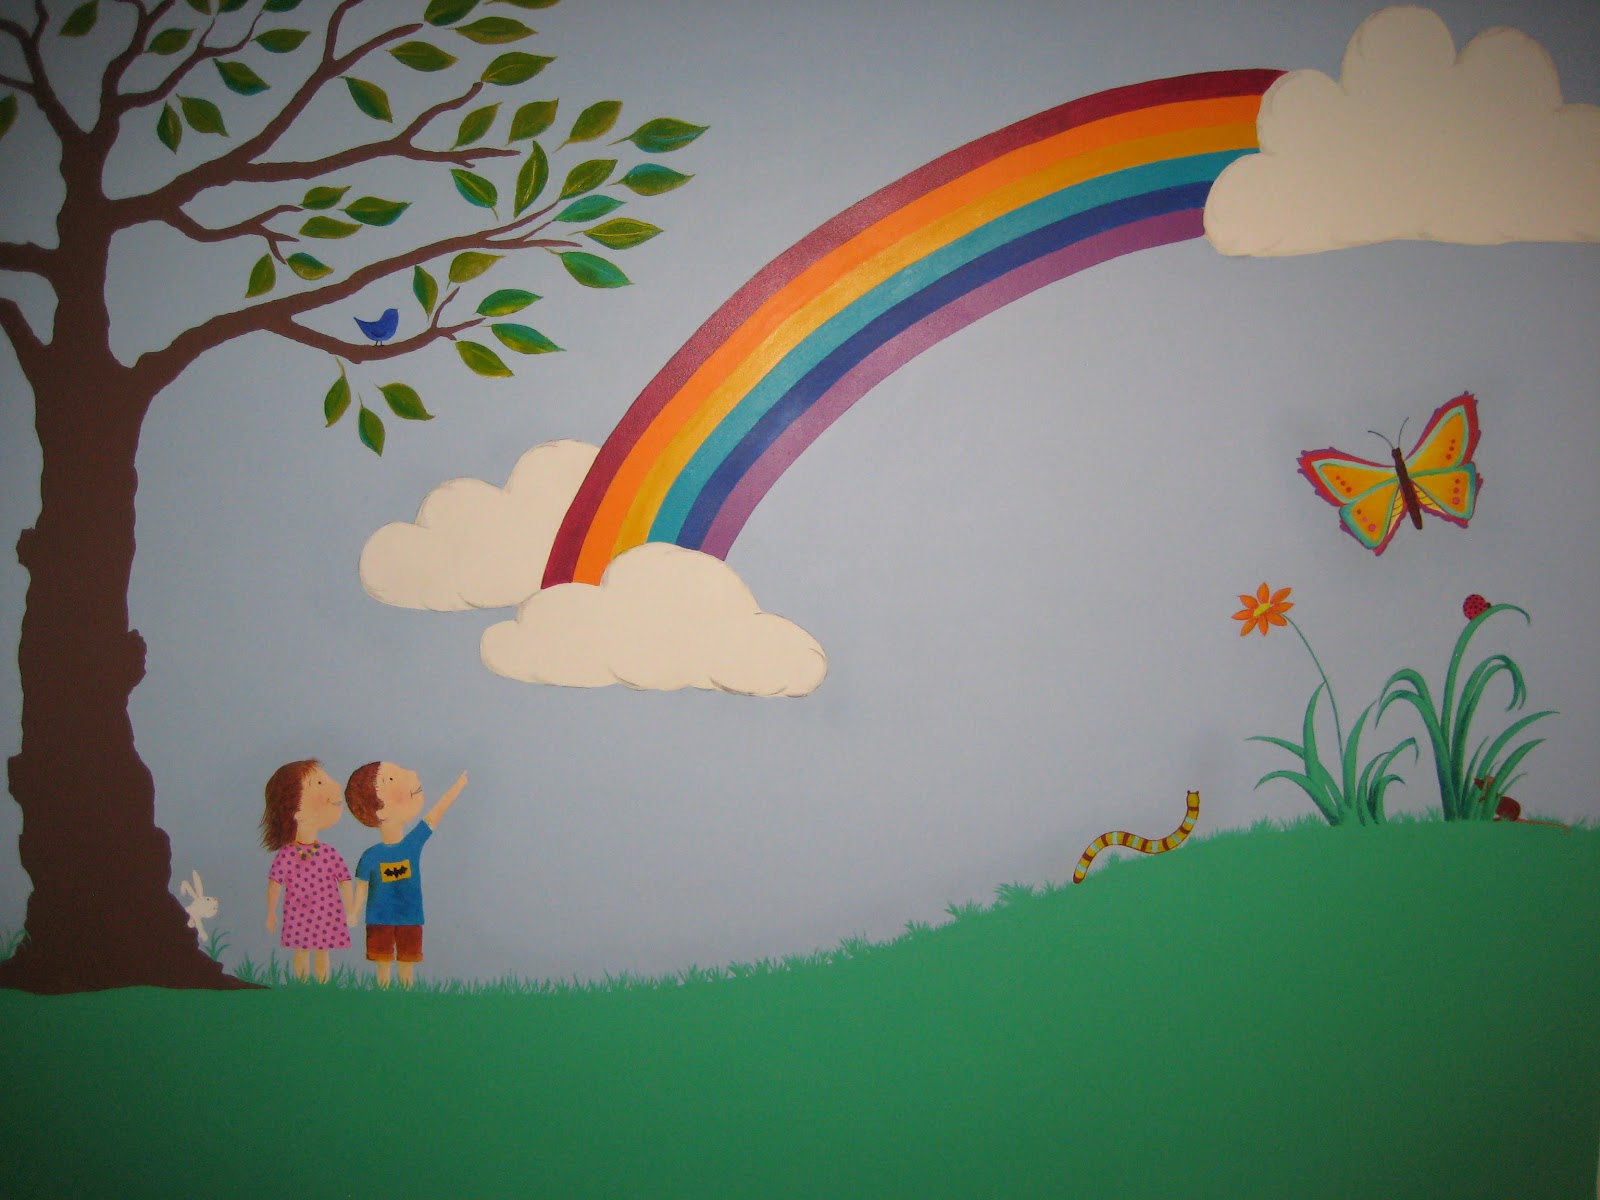 papel pintado del arco iris para el dormitorio,arco iris,mural,pared,pintura,cielo